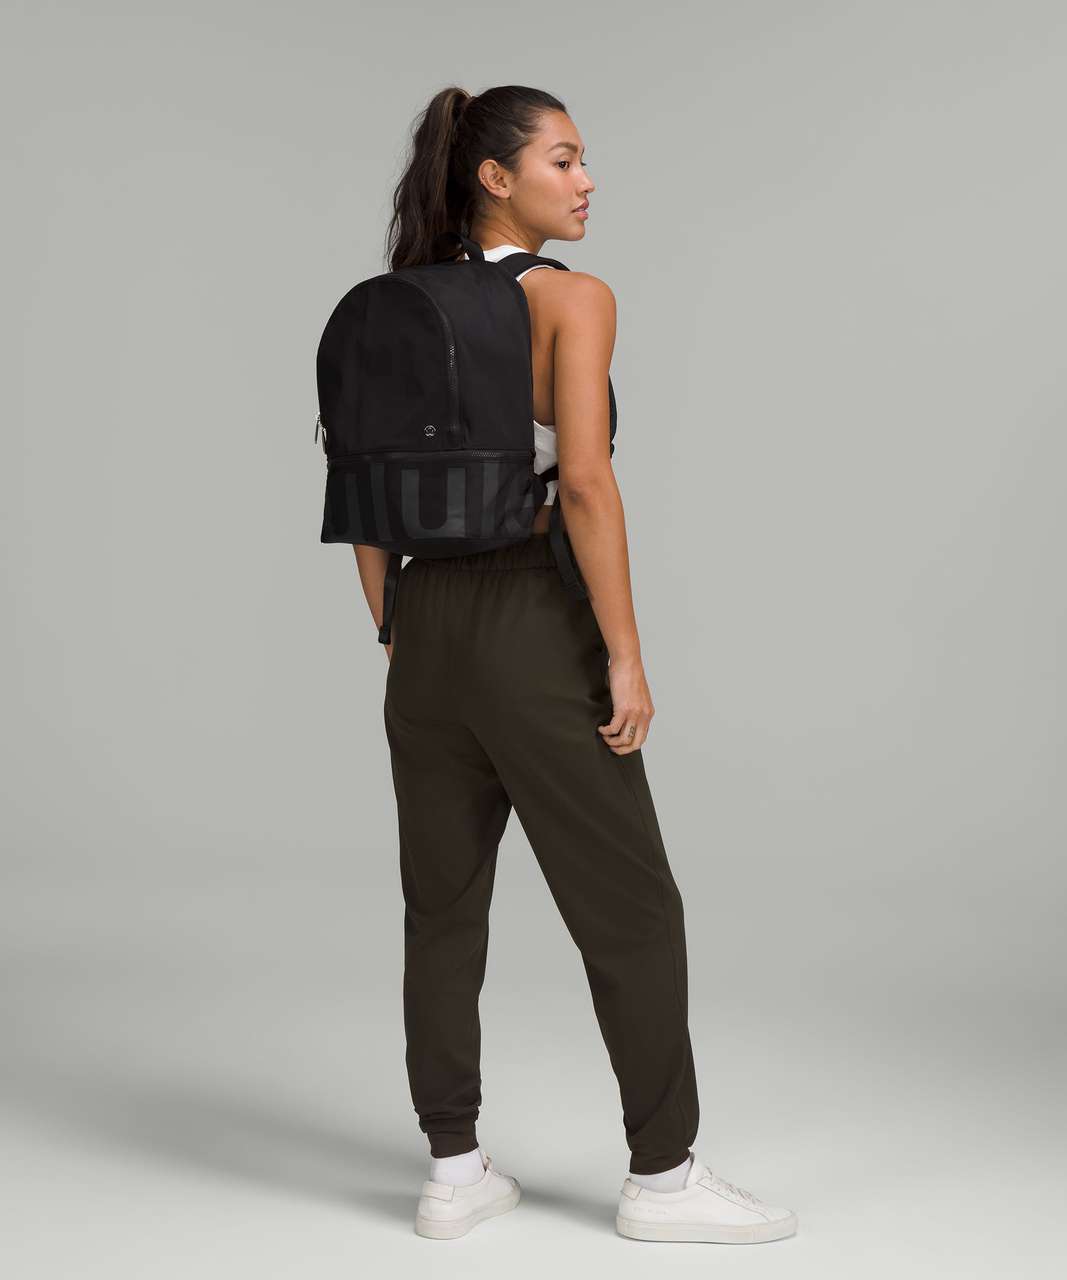 Lululemon City Adventurer Backpack 20L - Black / Graphite Grey